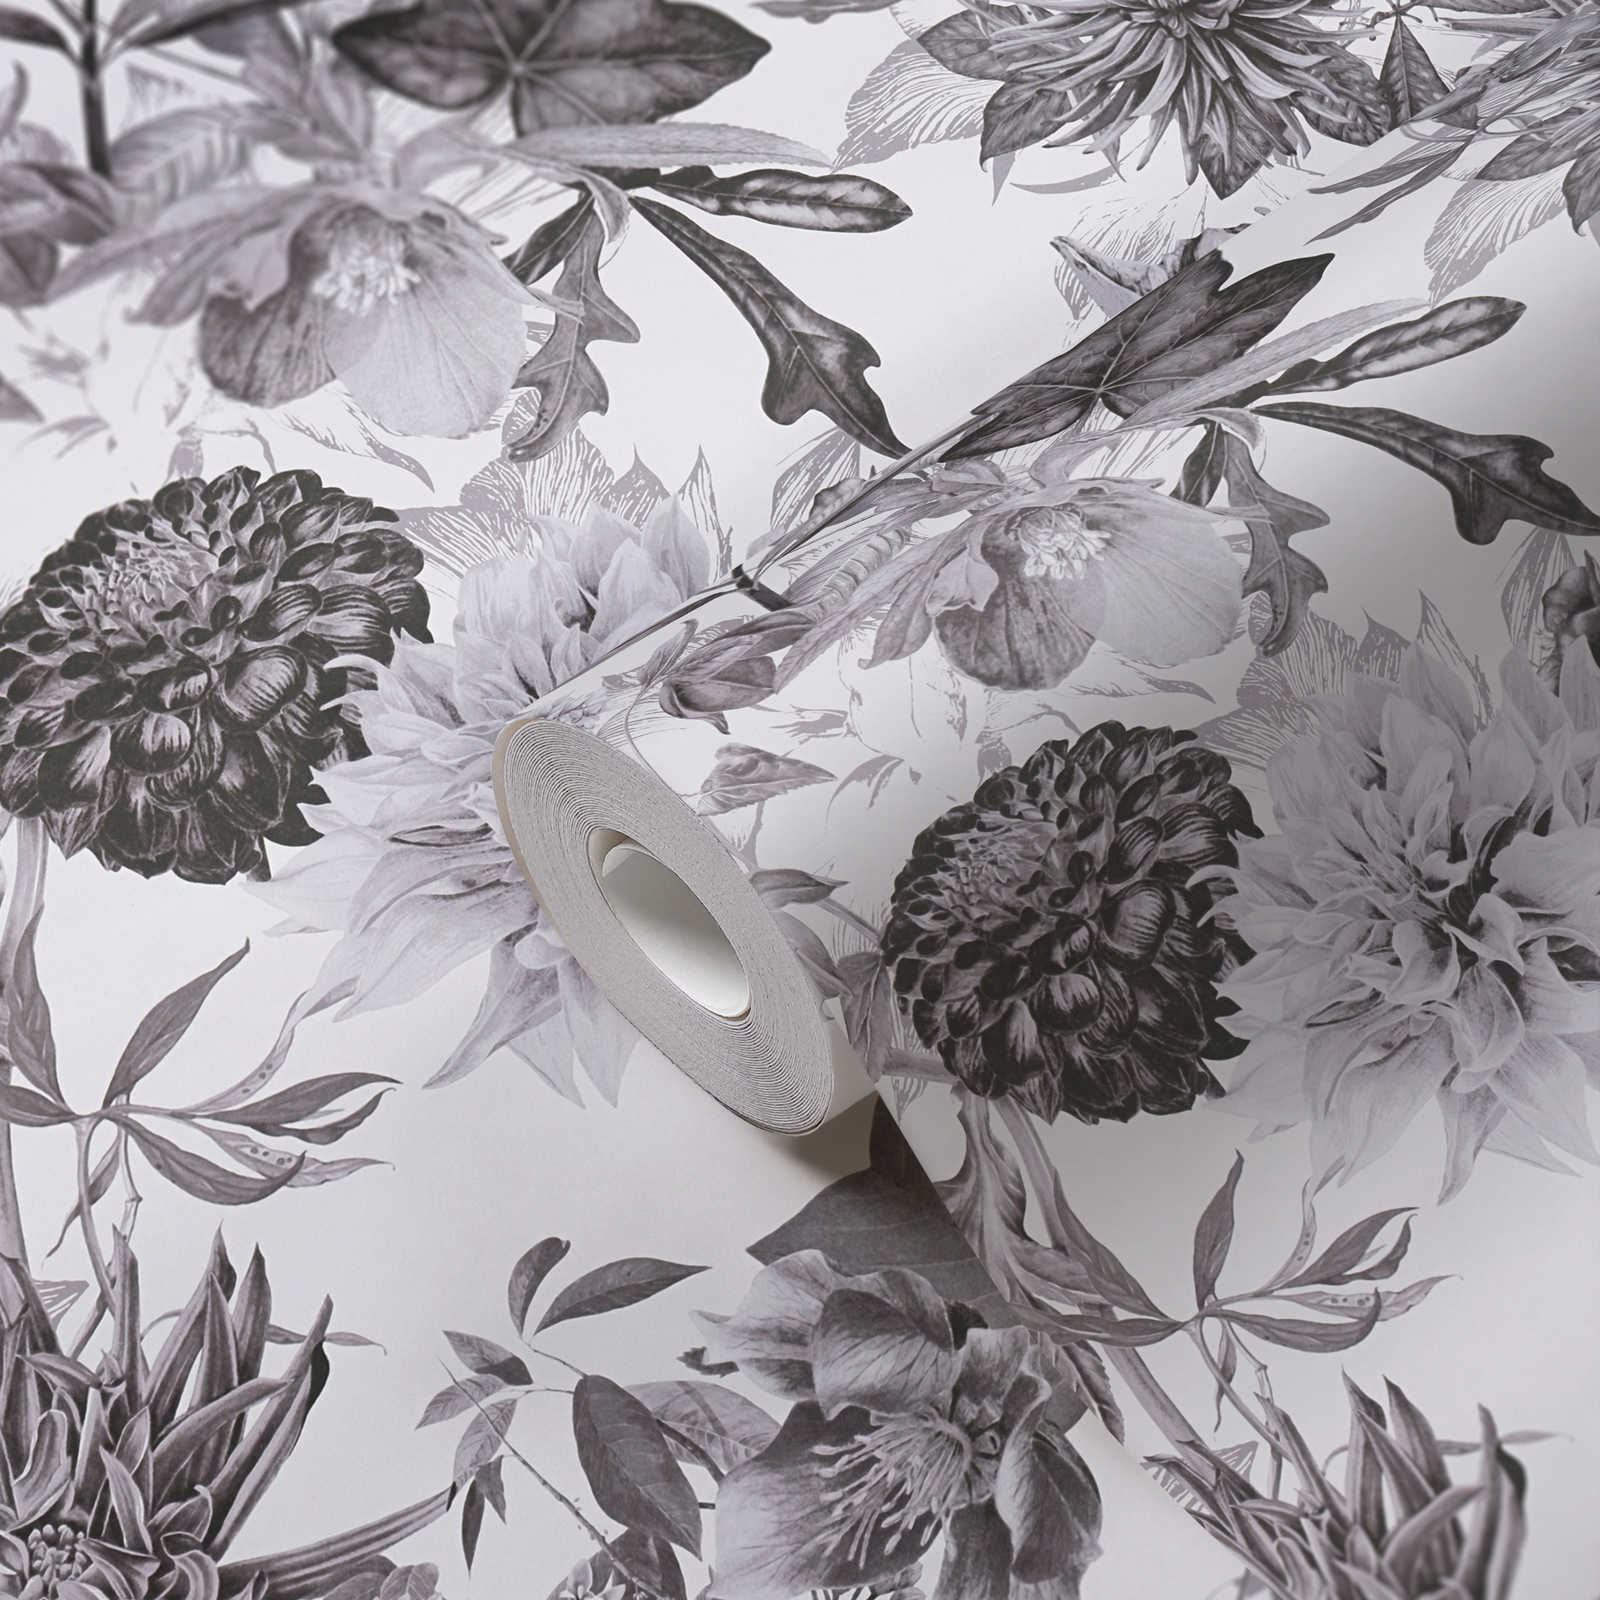             Papel pintado floral en blanco y negro con motivos florales
        